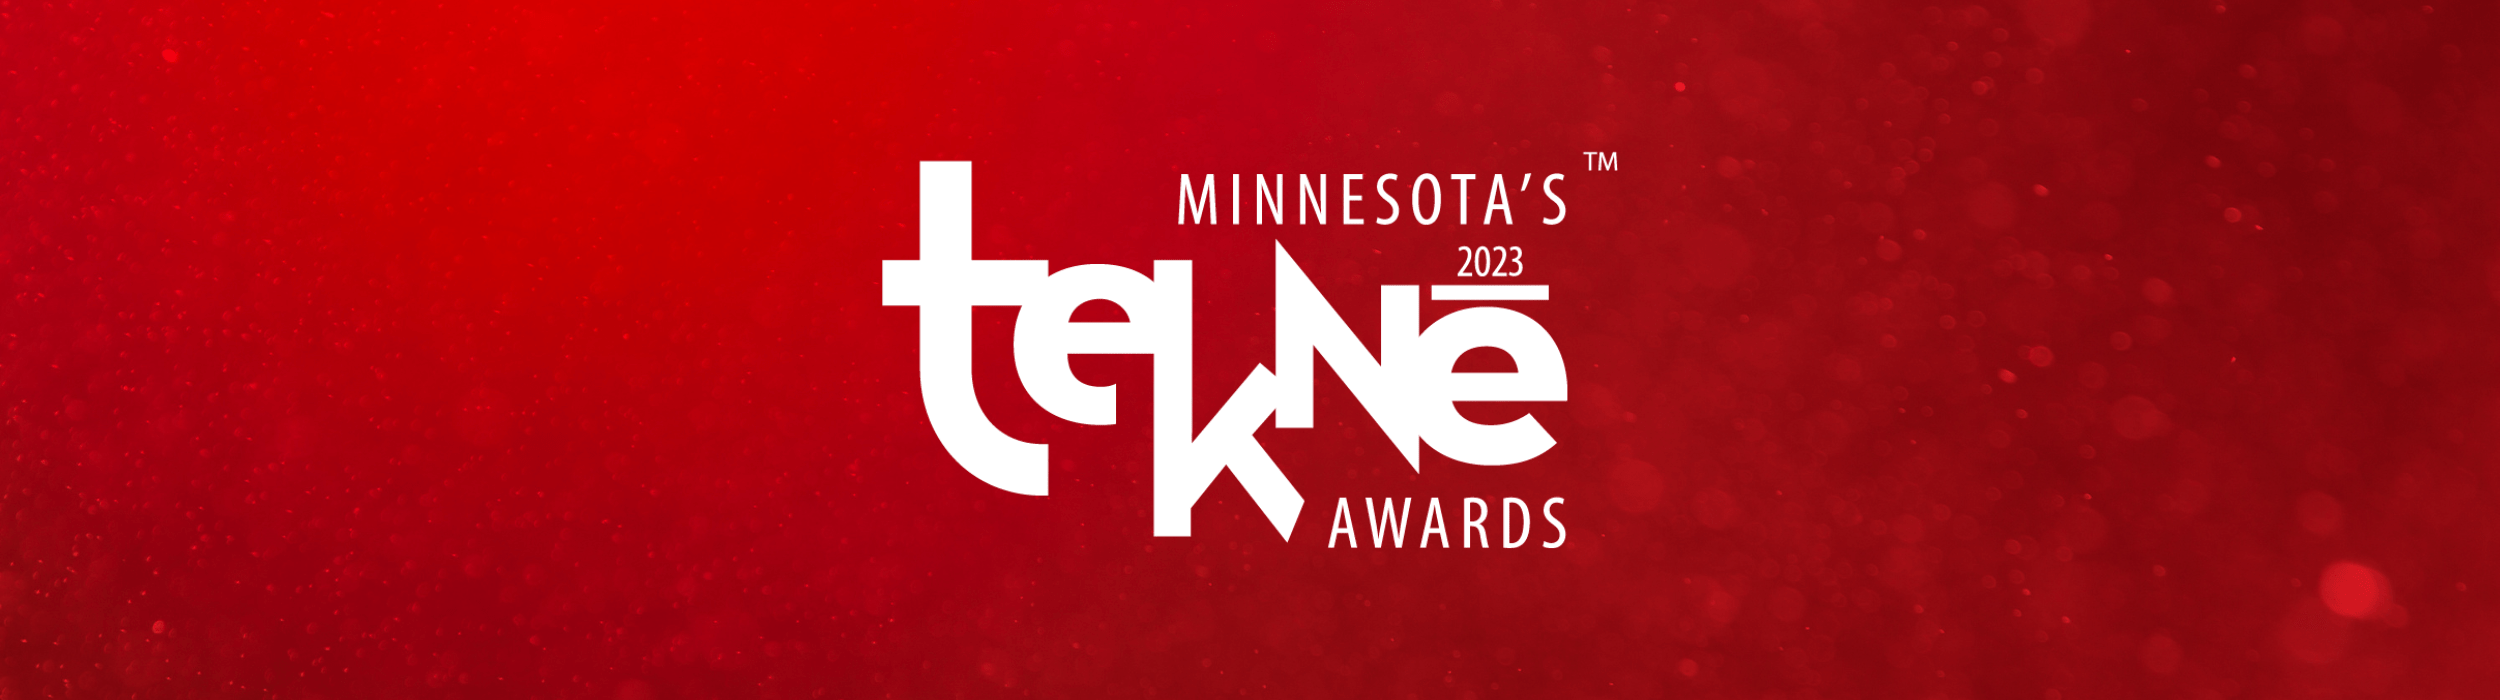 2023 Tekne Awards Applications » MnTech